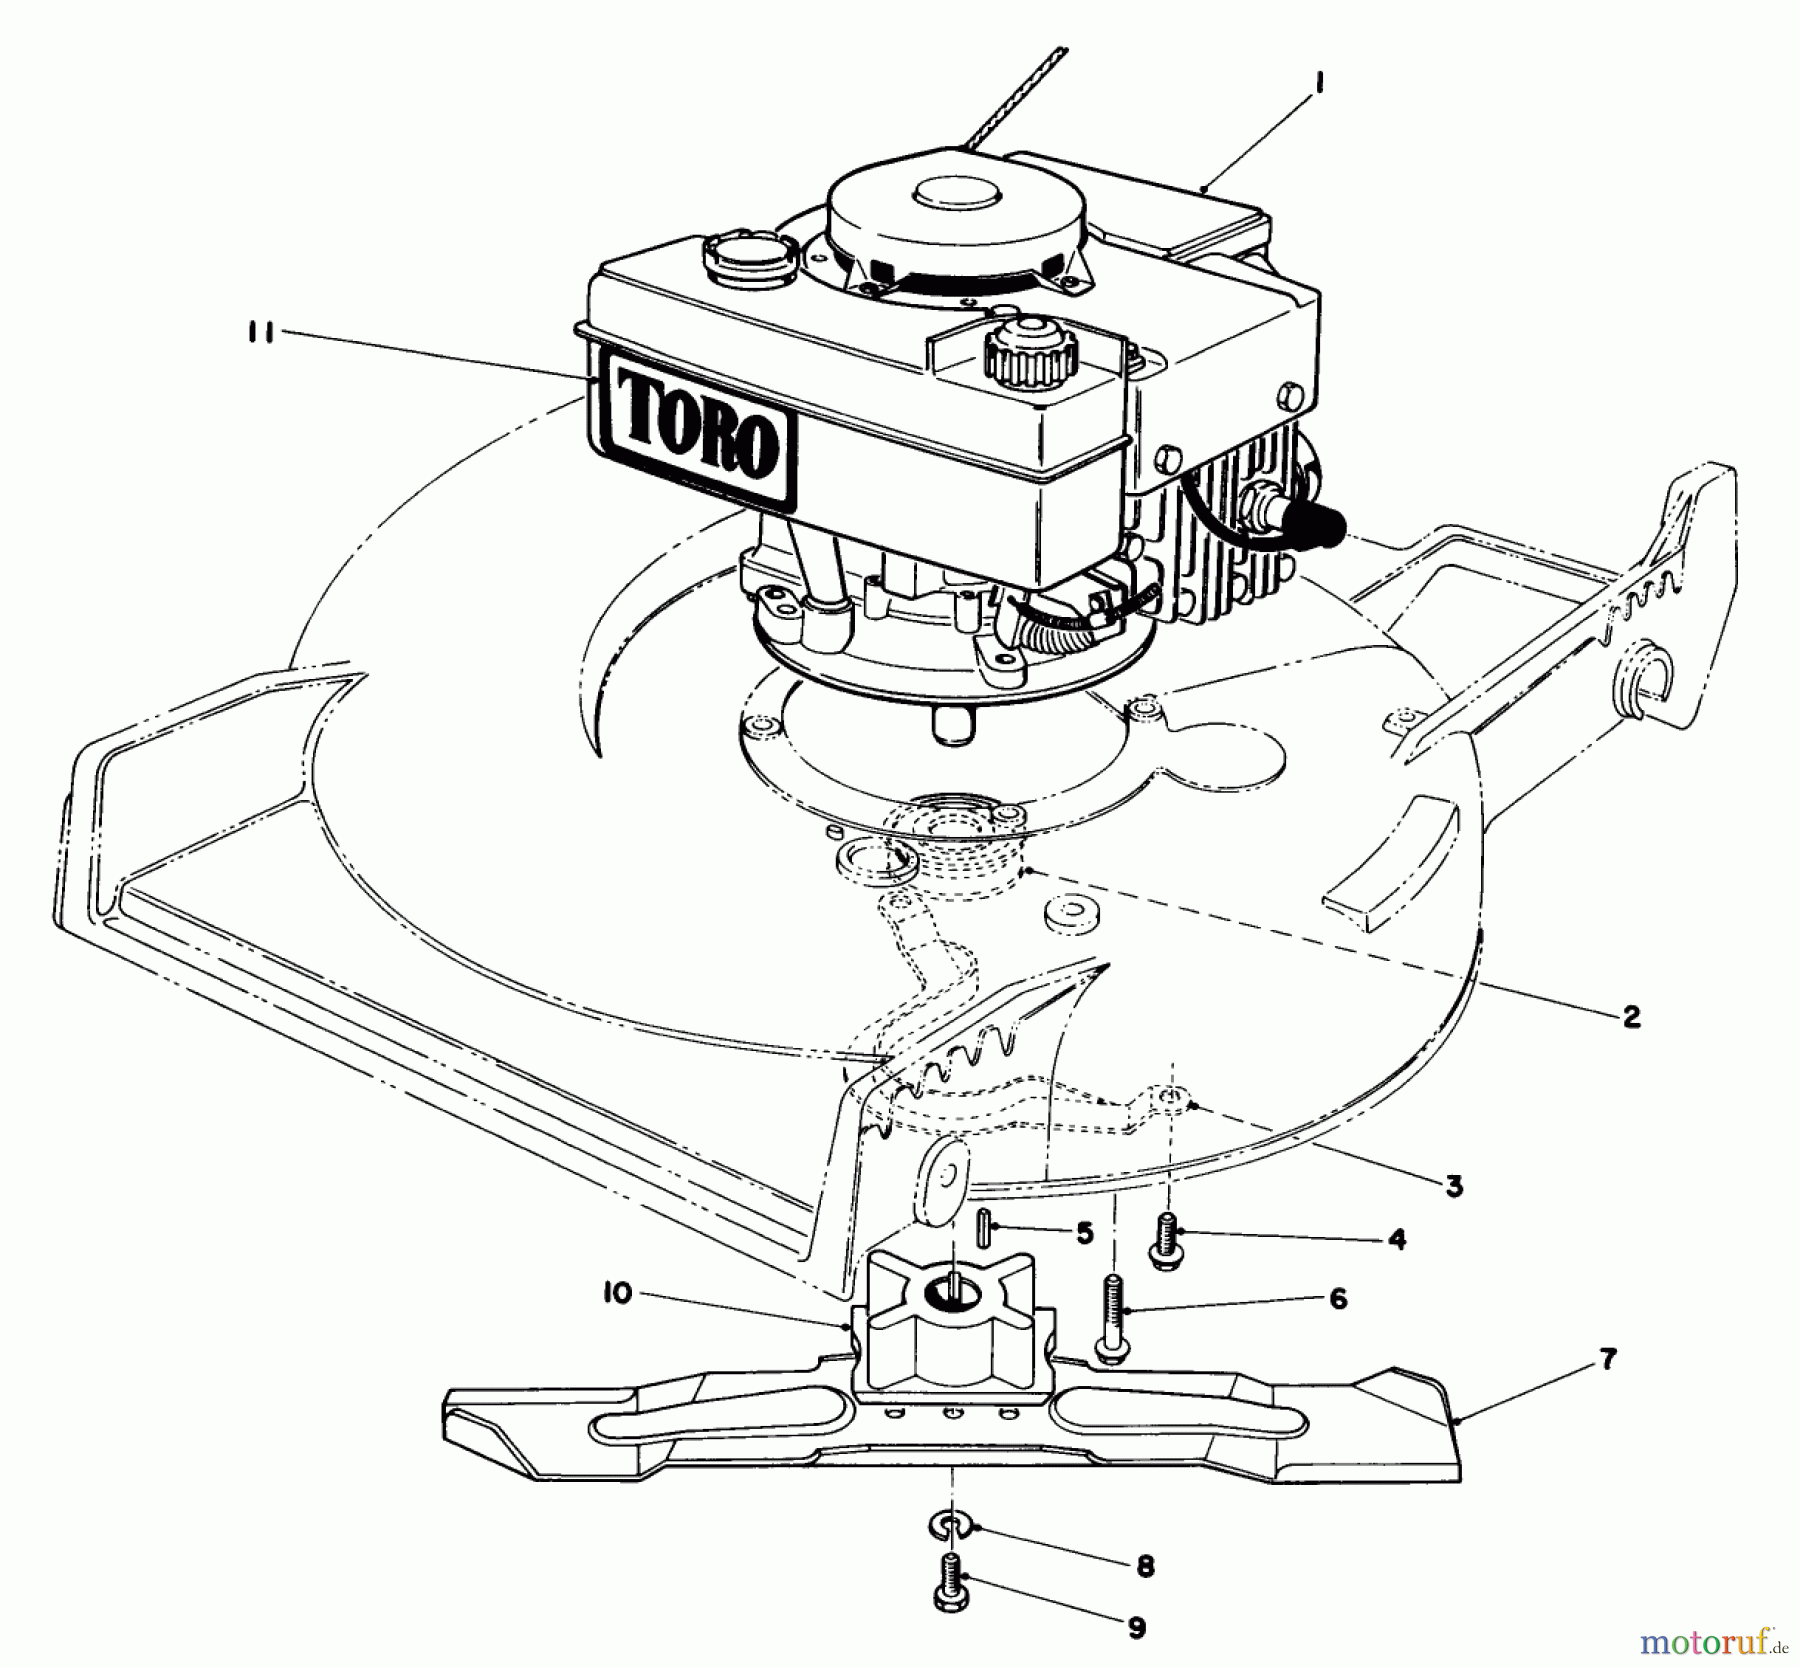  Toro Neu Mowers, Walk-Behind Seite 1 20675 - Toro Lawnmower, 1986 (6000001-6999999) ENGINE ASSEMBLY